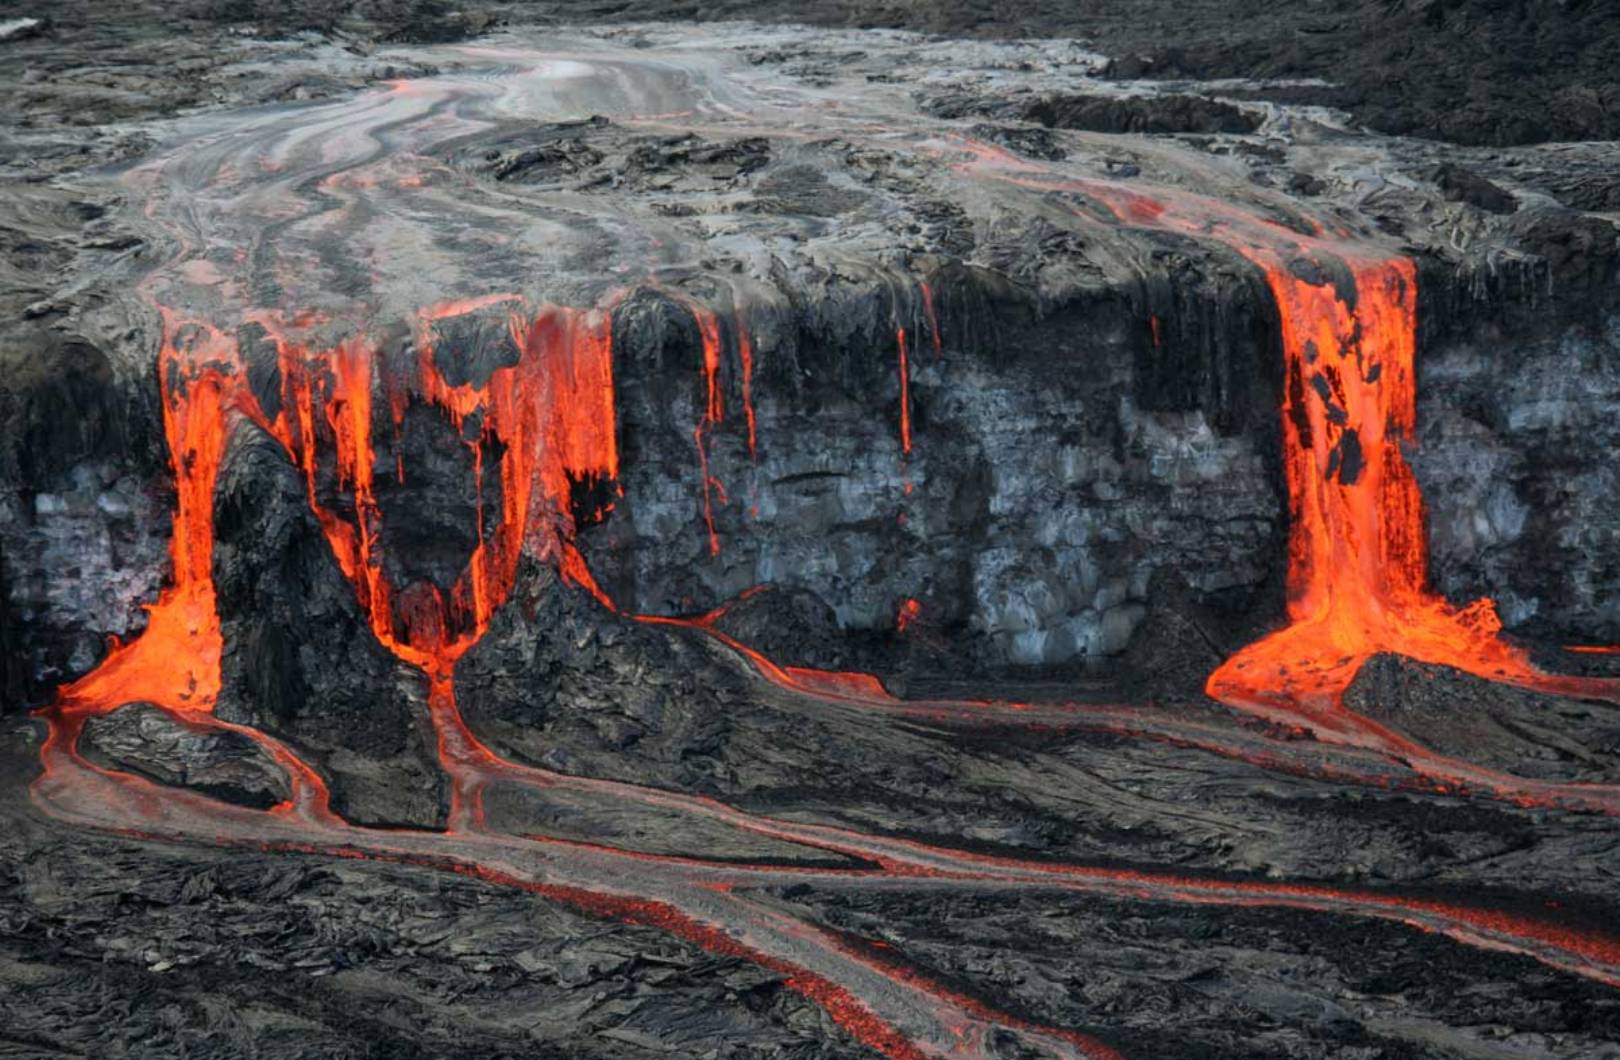 Une éruption du volcan Kilauea à Hawaï a émis de grandes quantités de laves formant la cascade que l'on voit sur cette photo. © USGS